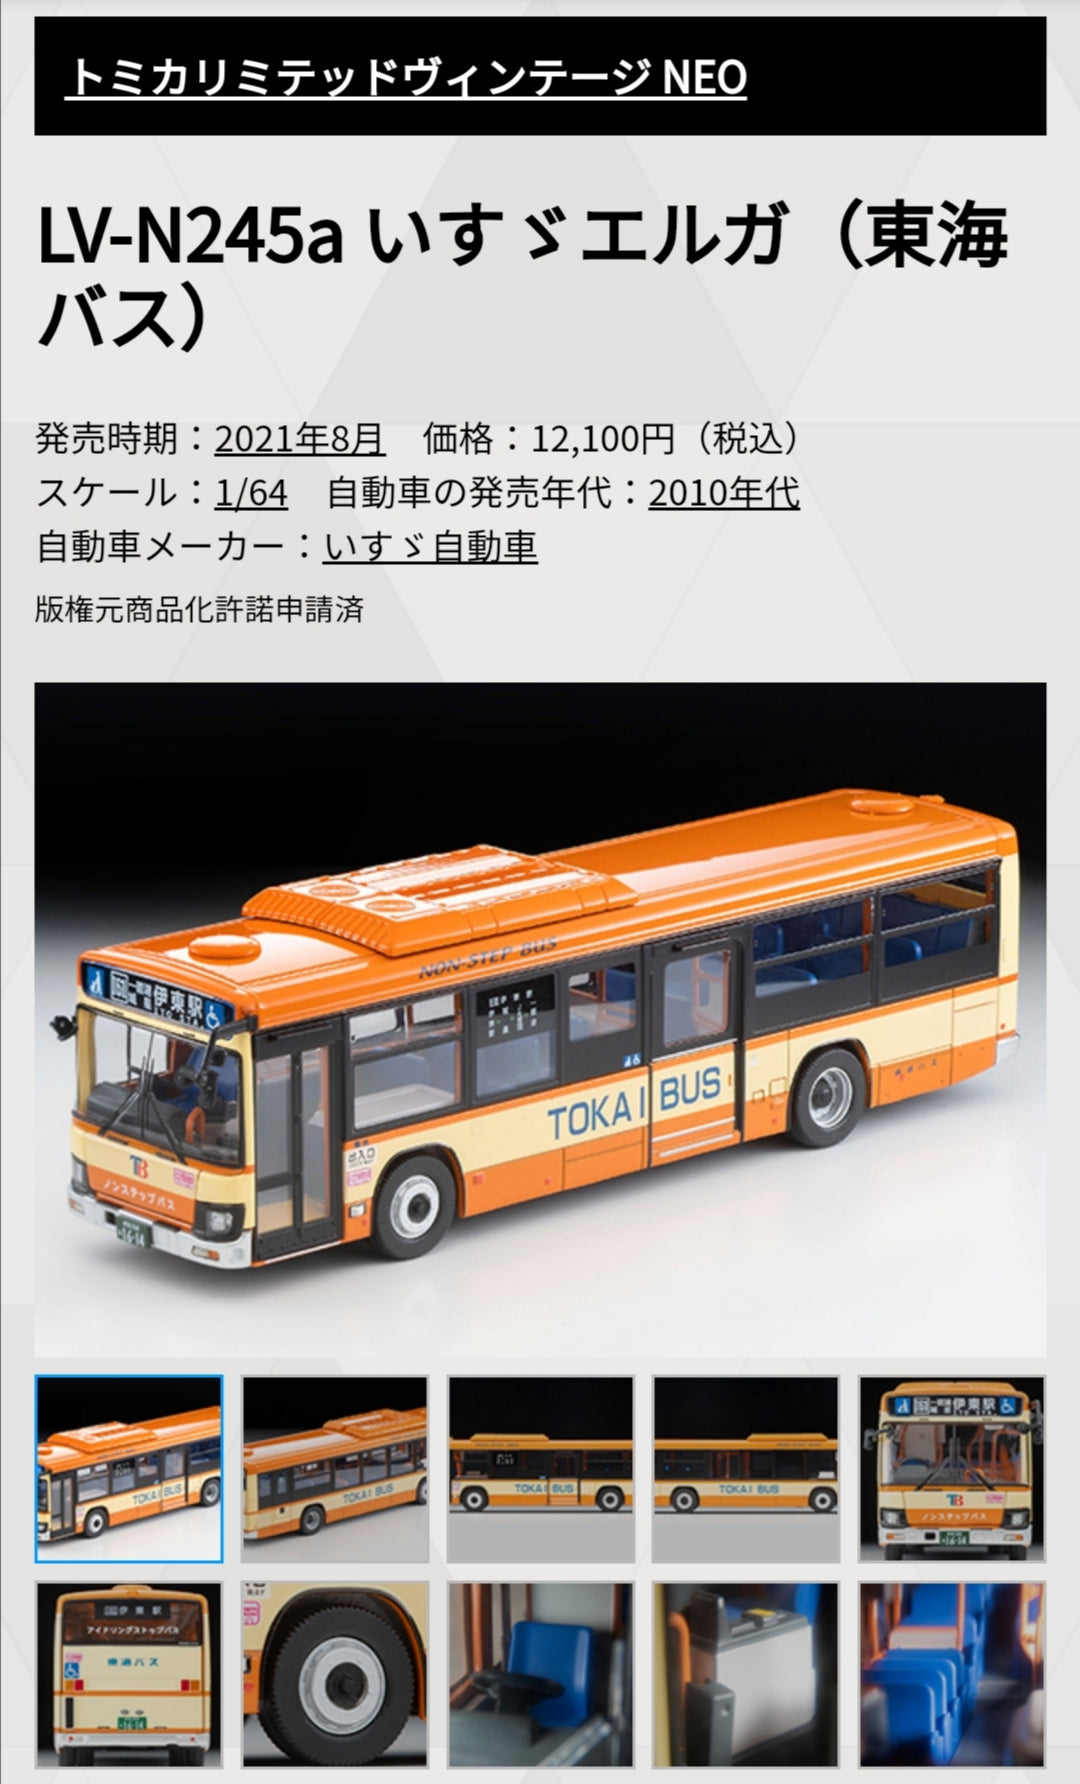 Tomica Limited Vintage Neo LV-N245a Isuzu Erga (Tokai Bus)